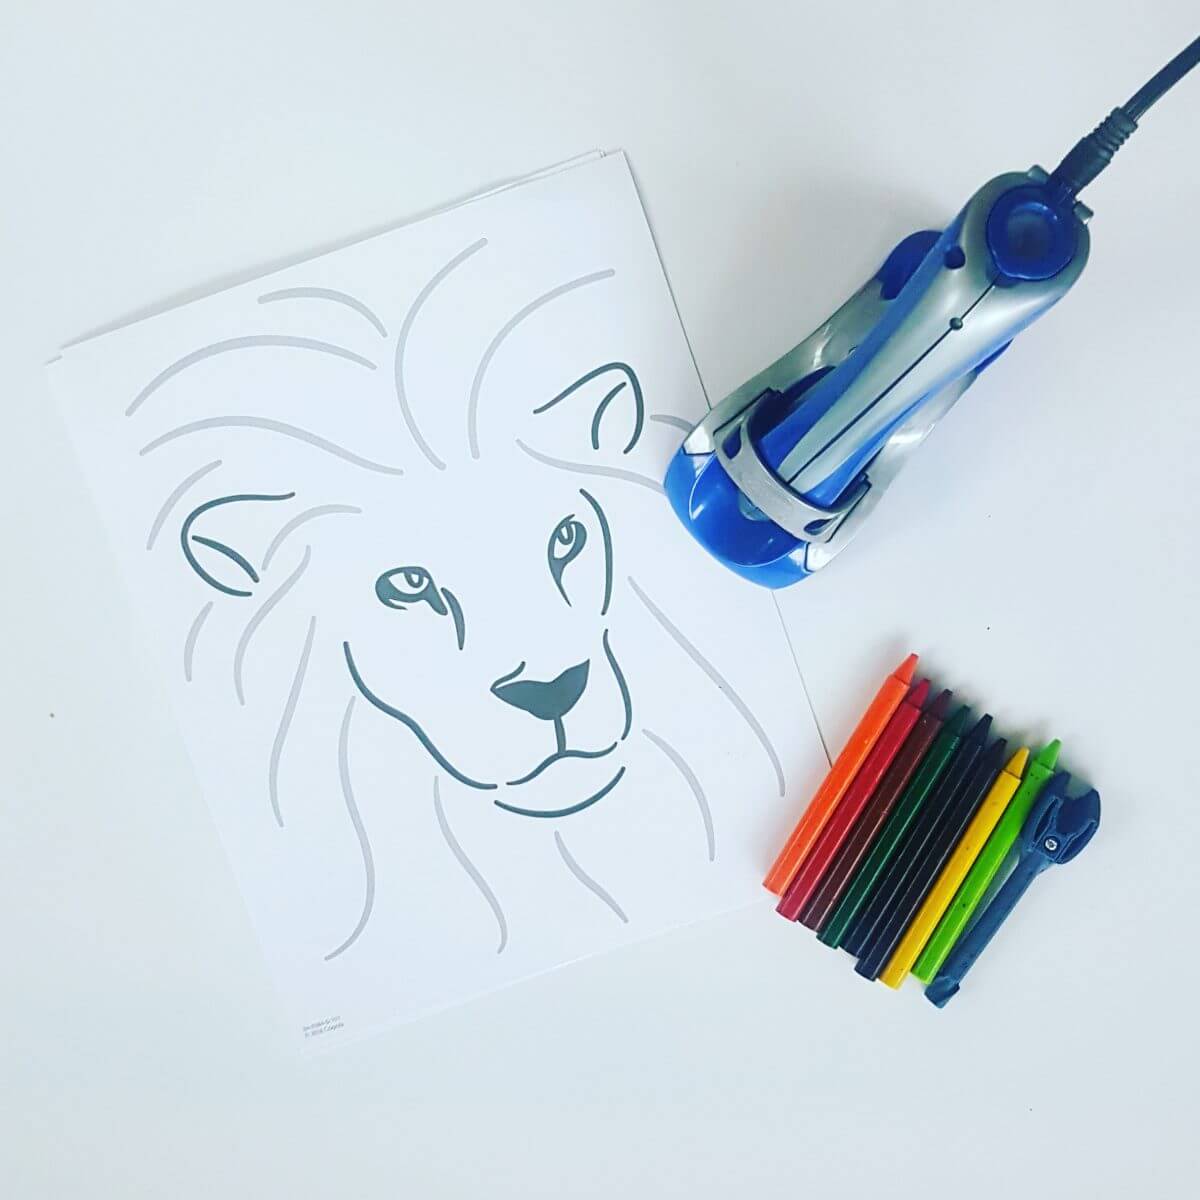 Crayola Crayon Pen: kinderkunst maken met gesmolten wasco